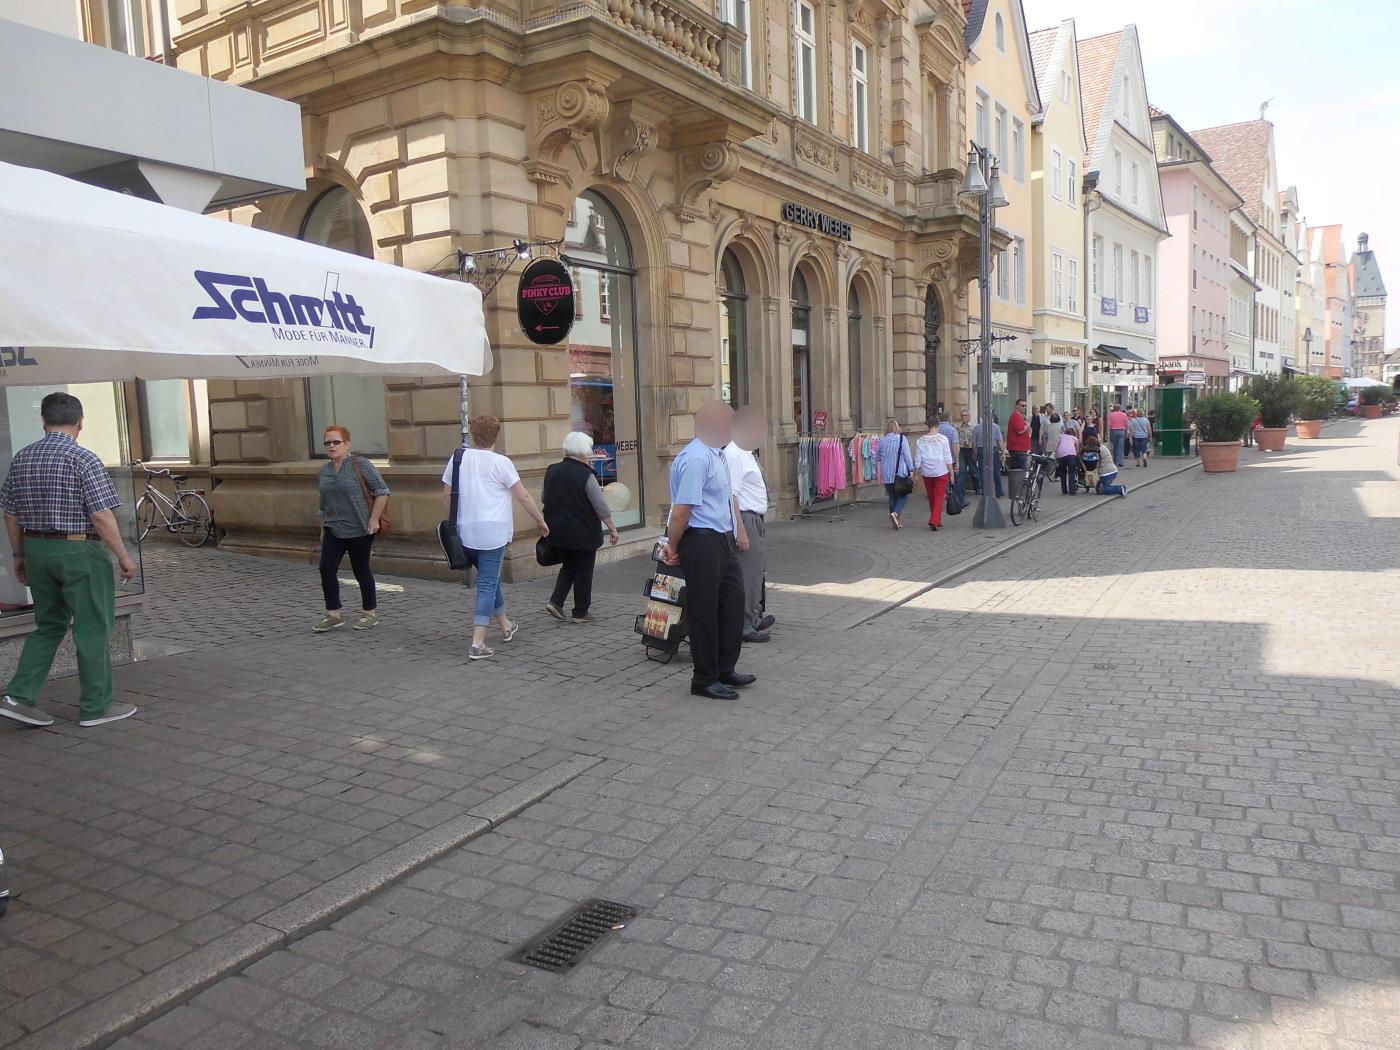 Jehovas Zeugen in Speyer klein mit Hut